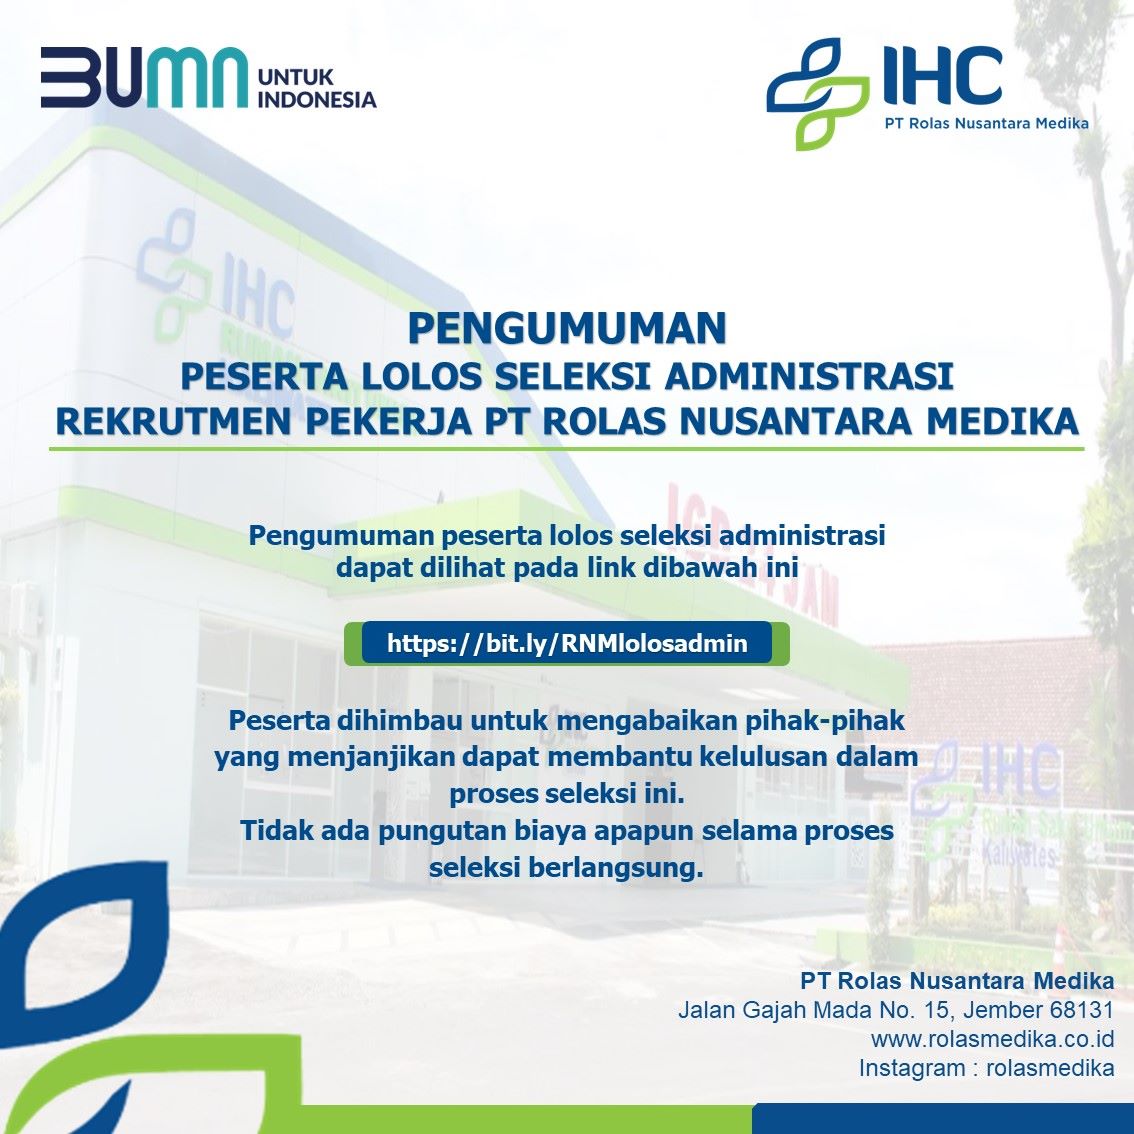 You are currently viewing Pengumuman Lolos Seleksi Administrasi Rekrutmen Pekerja PT Rolas Nusantara Medika